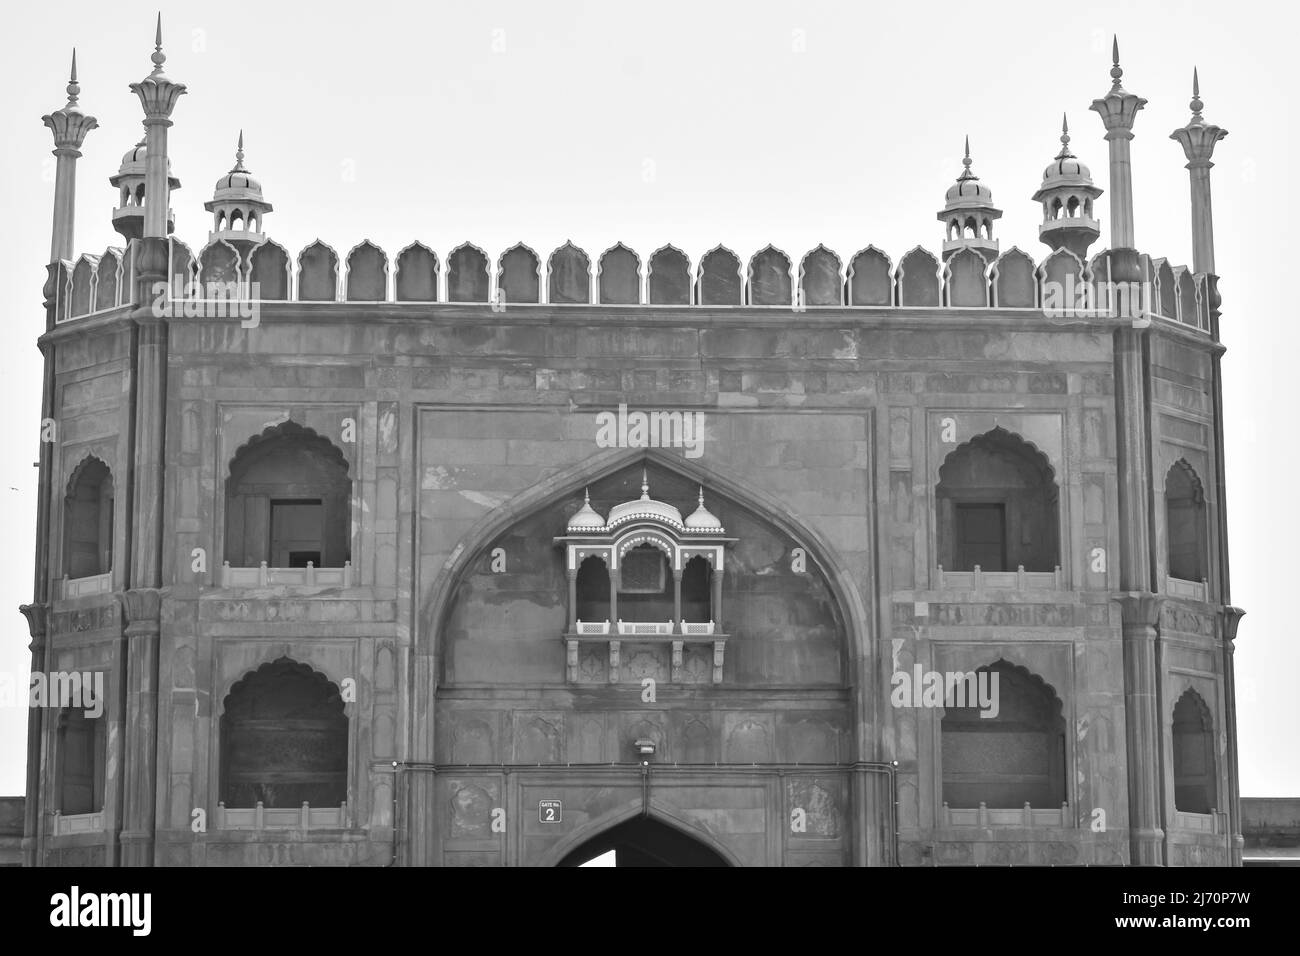 Dettagli architettonici della Moschea di Jama Masjid, Vecchia Delhi, India, la spettacolare architettura della Grande Moschea del Venerdì (Jama Masjid) a Delhi 6 durante Foto Stock